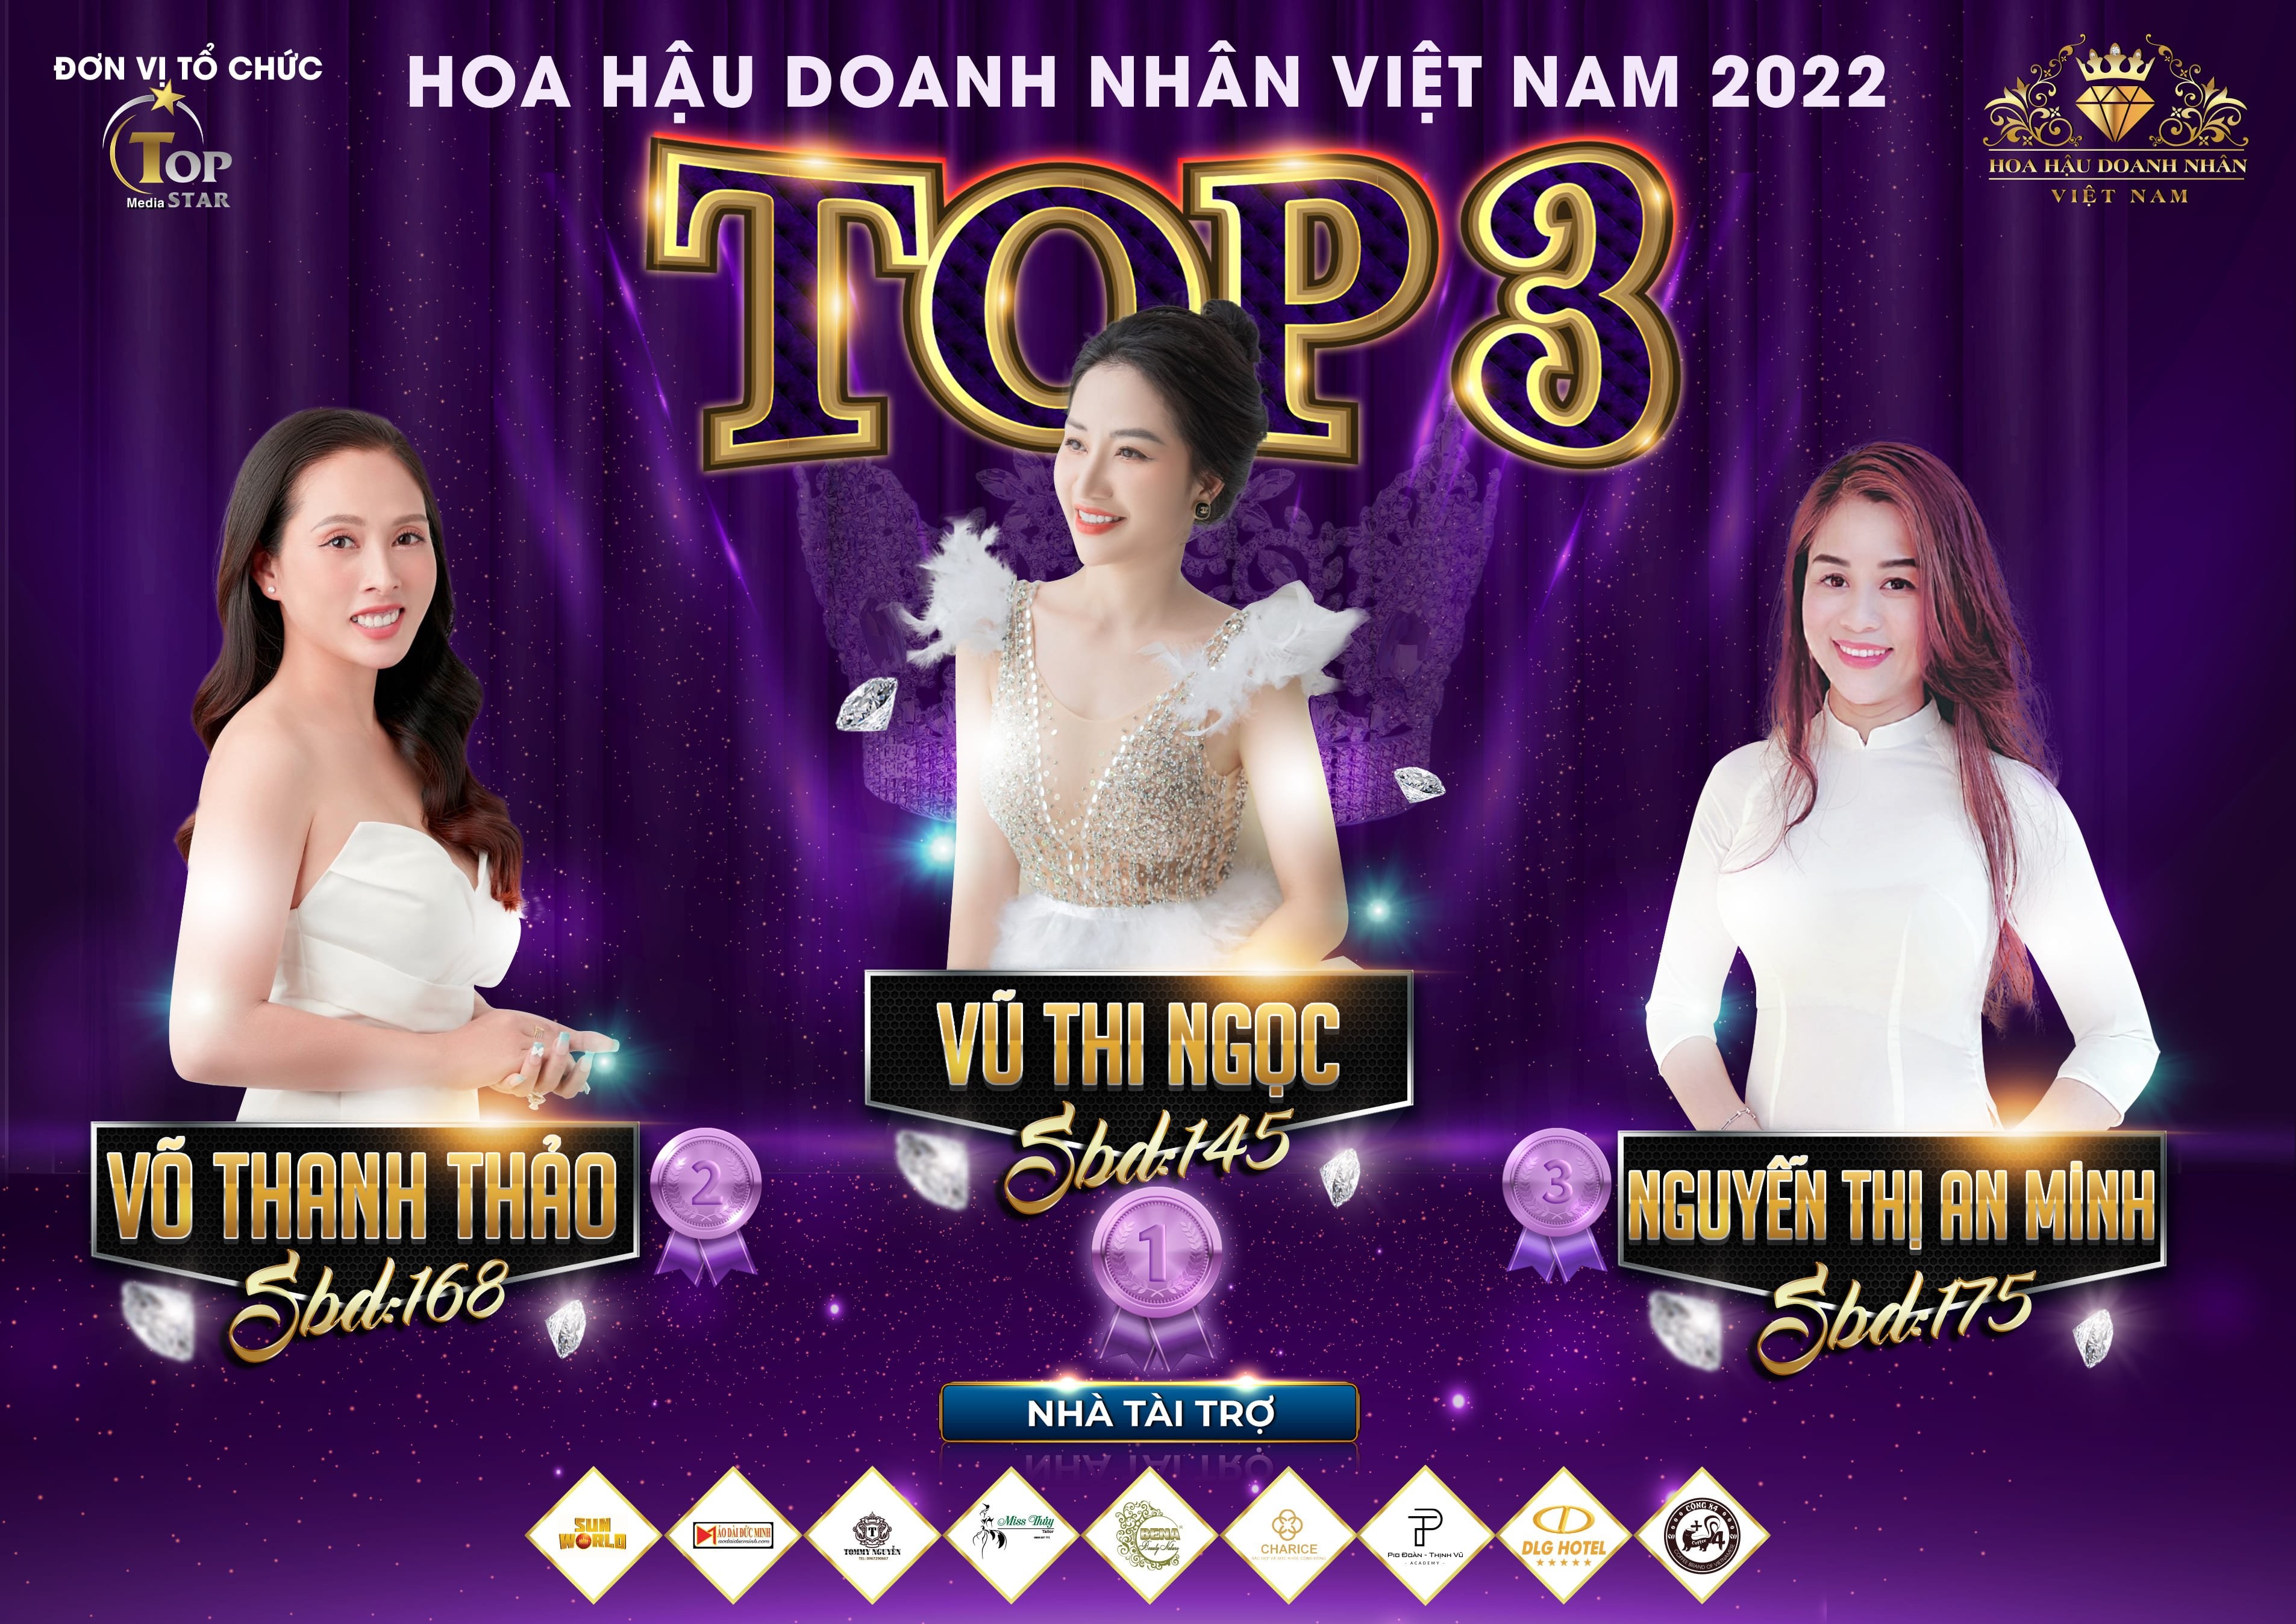 Nữ doanh nhân Thanh Hóa Kelly Ngọc liên tiếp dẫn dầu trên BXH Hoa hậu Doanh nhân Việt Nam 2022